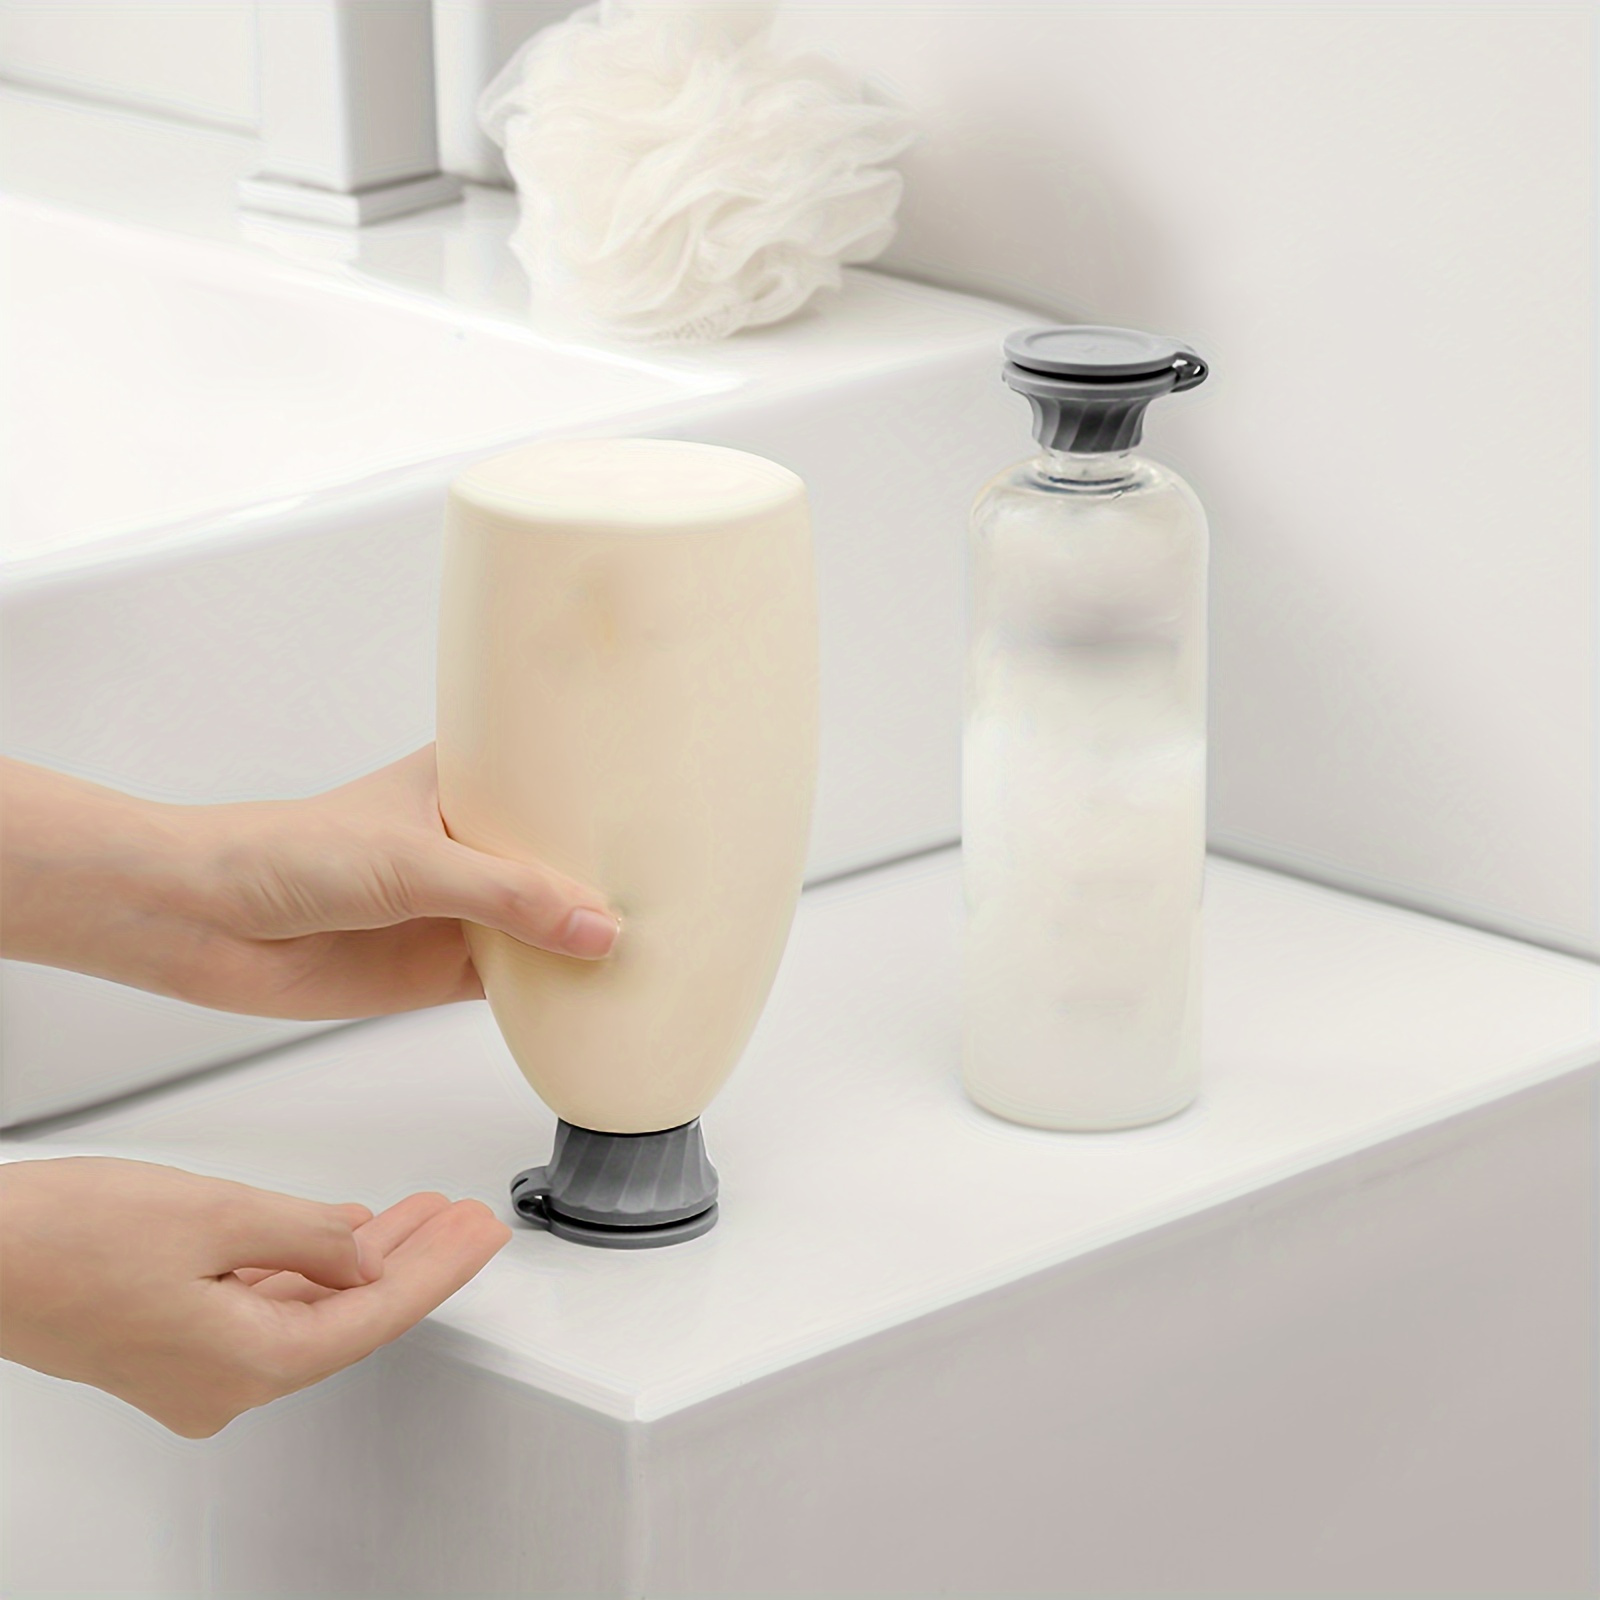 

6pcs Upside-down Bottle Caps, Leakproof Plastic Lids For Shower Gel, Shampoo, Kitchen Condiments, Bathroom & Kitchen Accessories